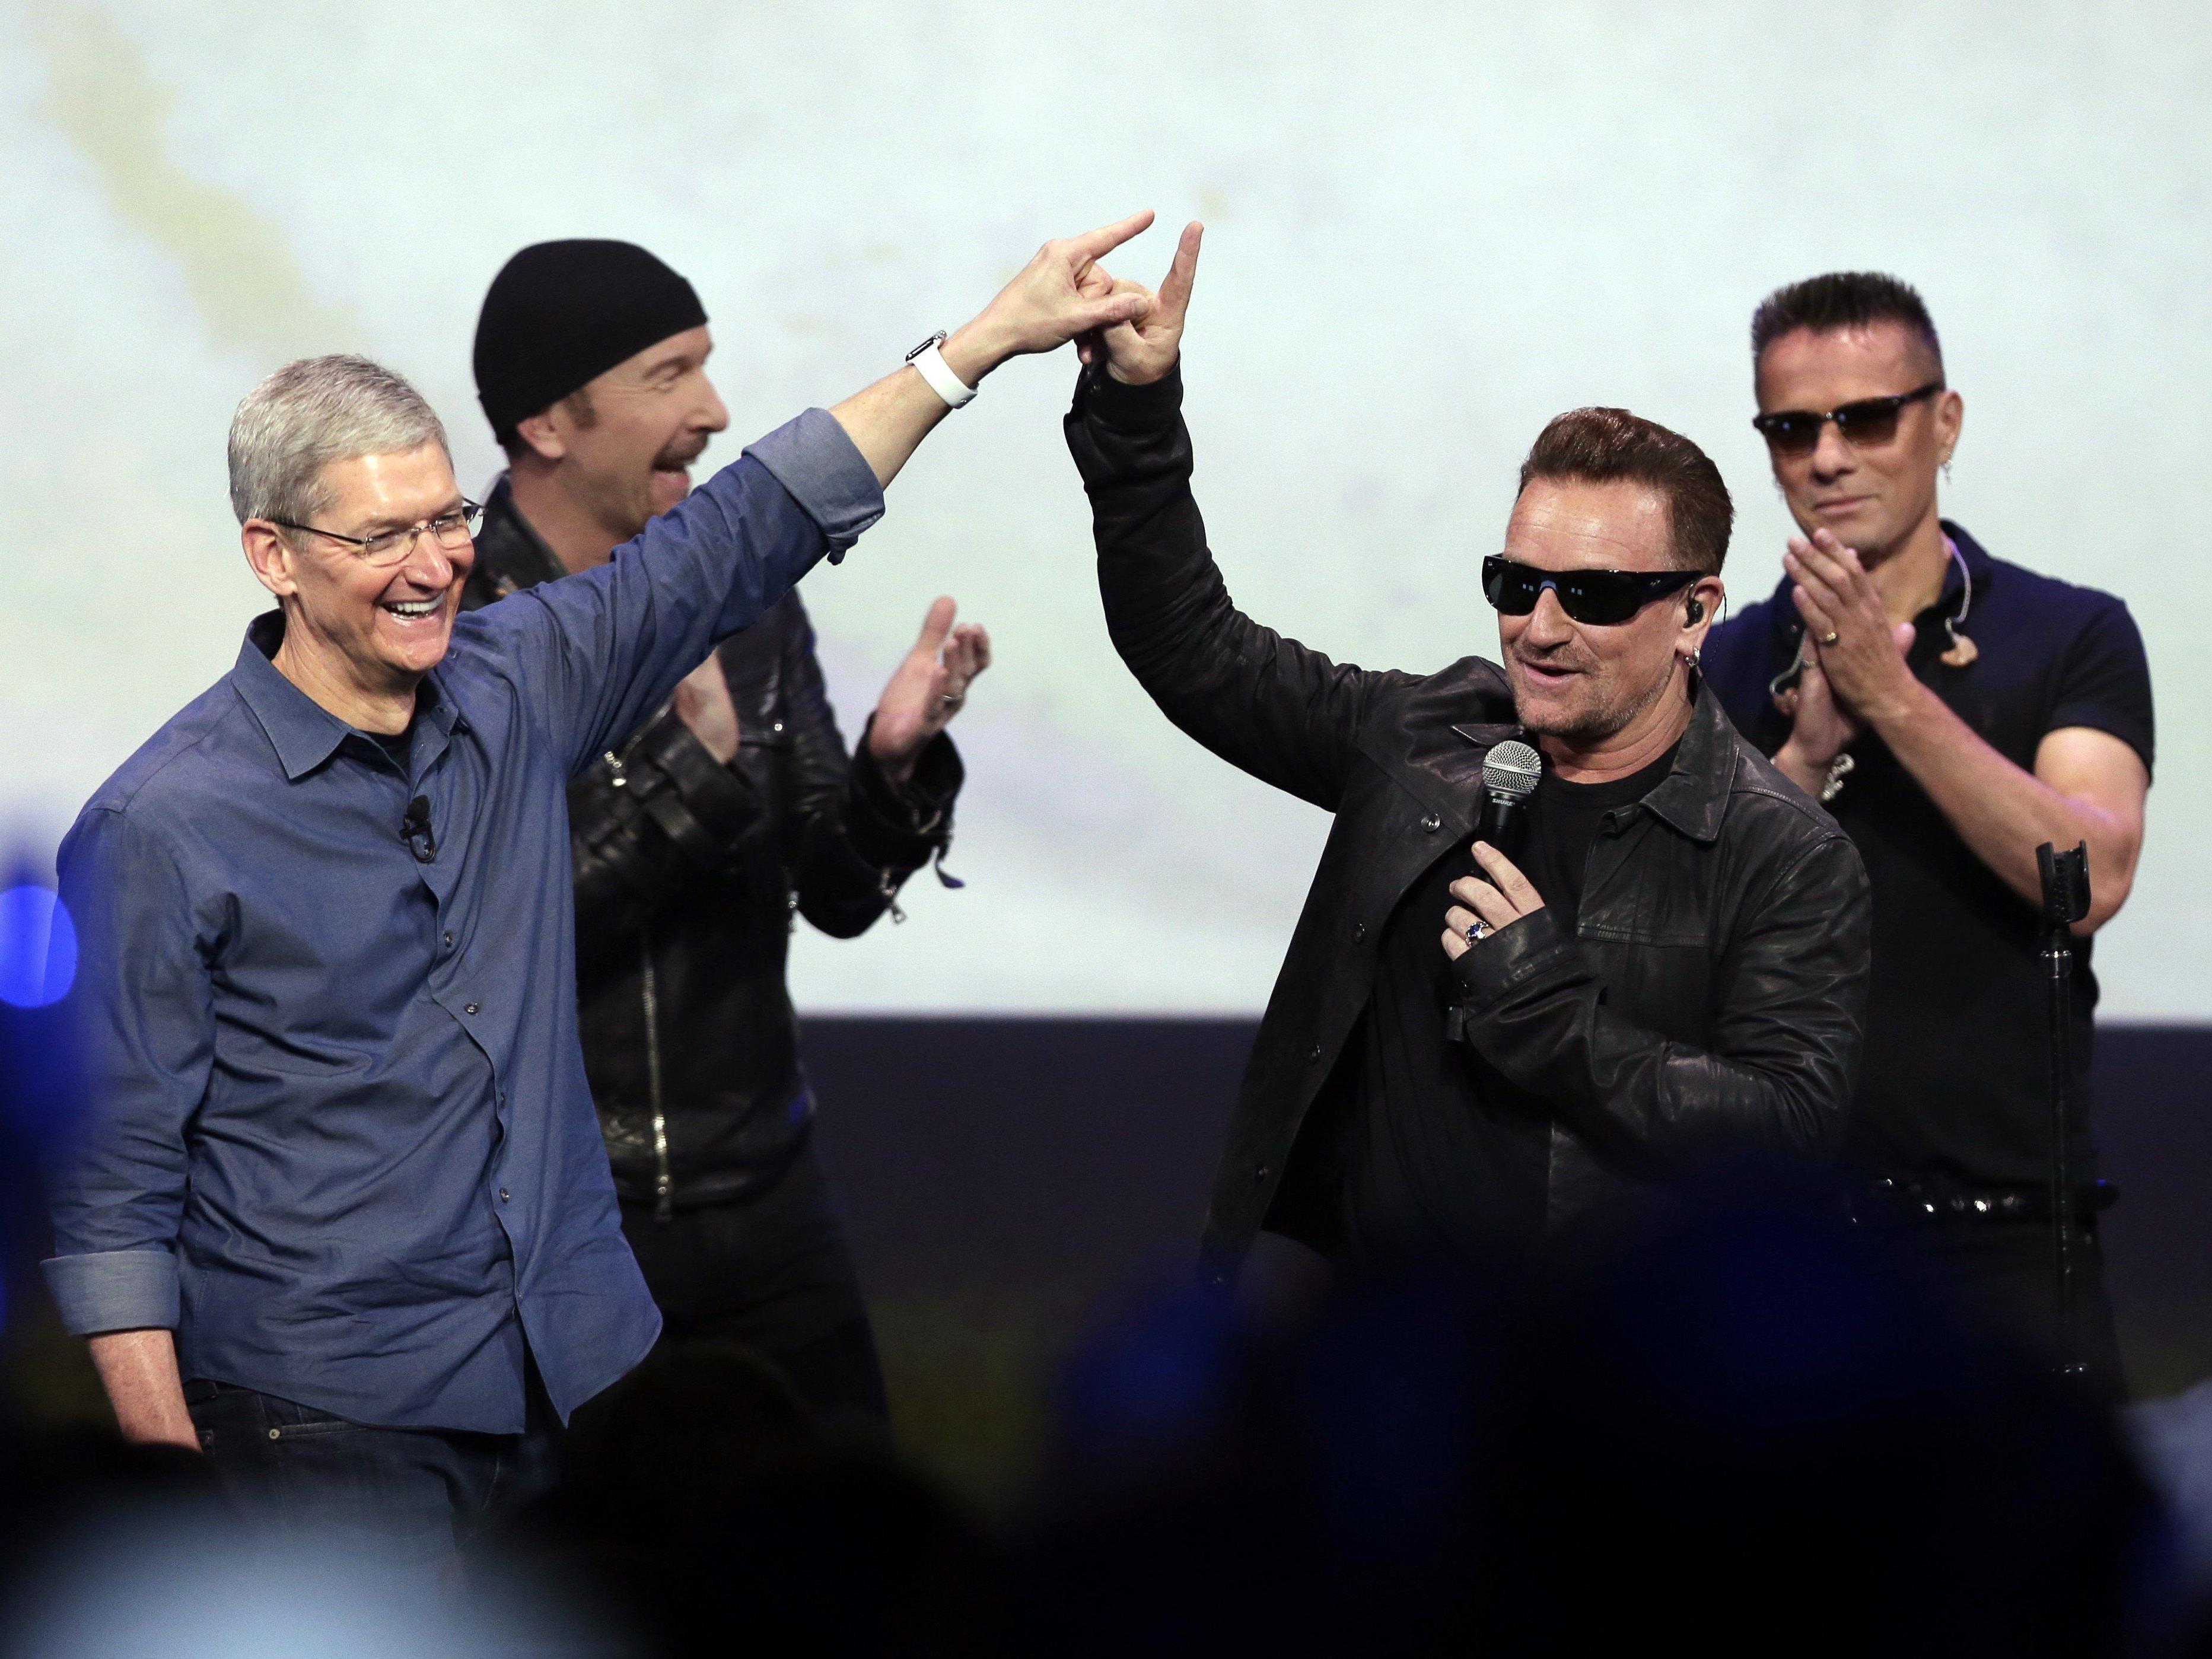 Ungefragter U2-Download in Mediathek sorgte für heftige Kritik.